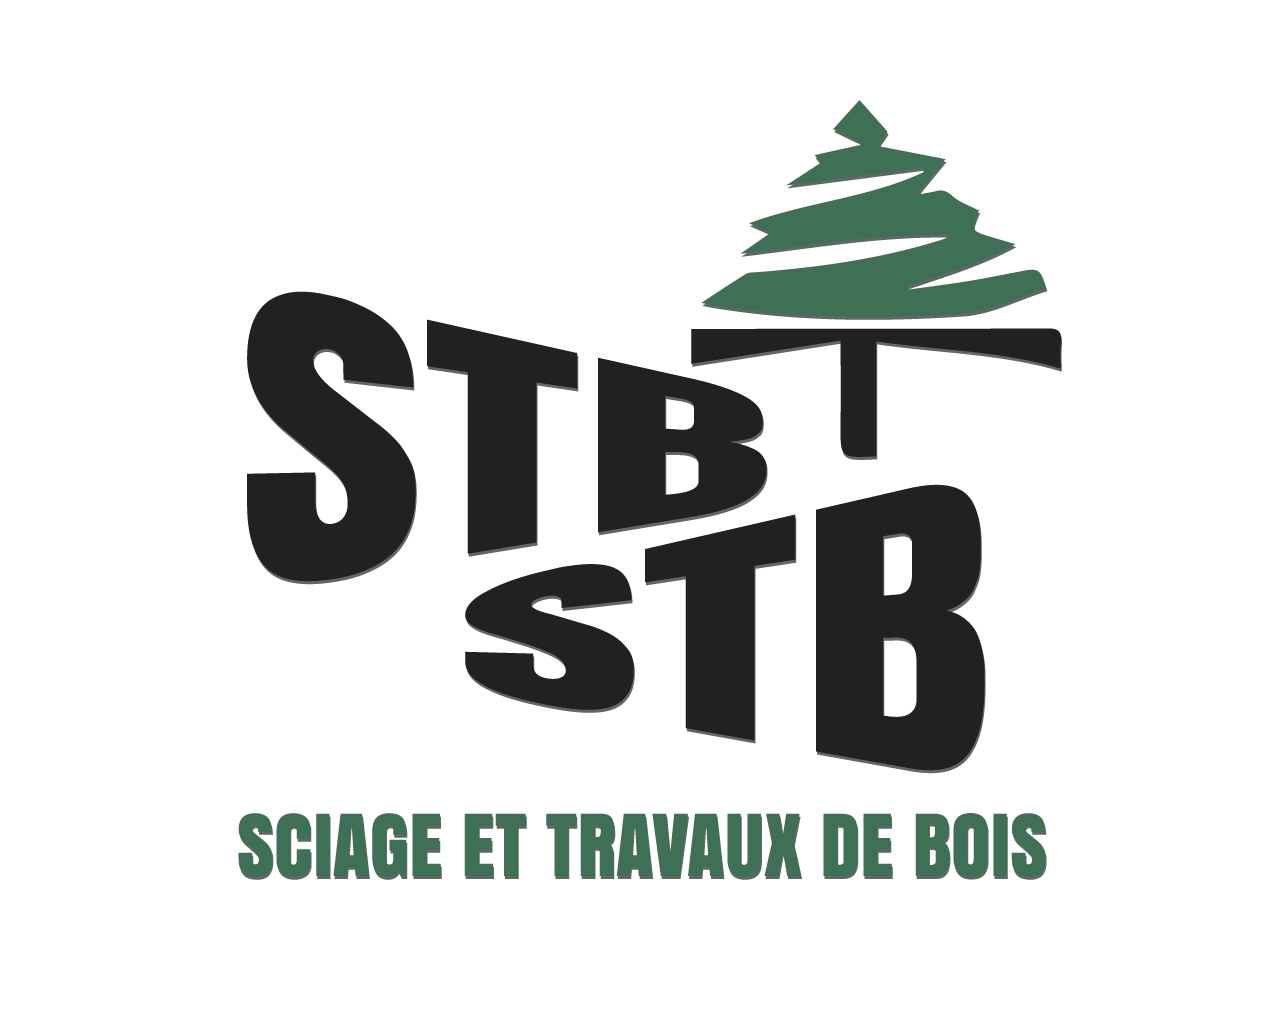 Logotype noir et vert STB Sciage et travaux de bois : emballage, palette, menuiserie entre Annecy et Albertville